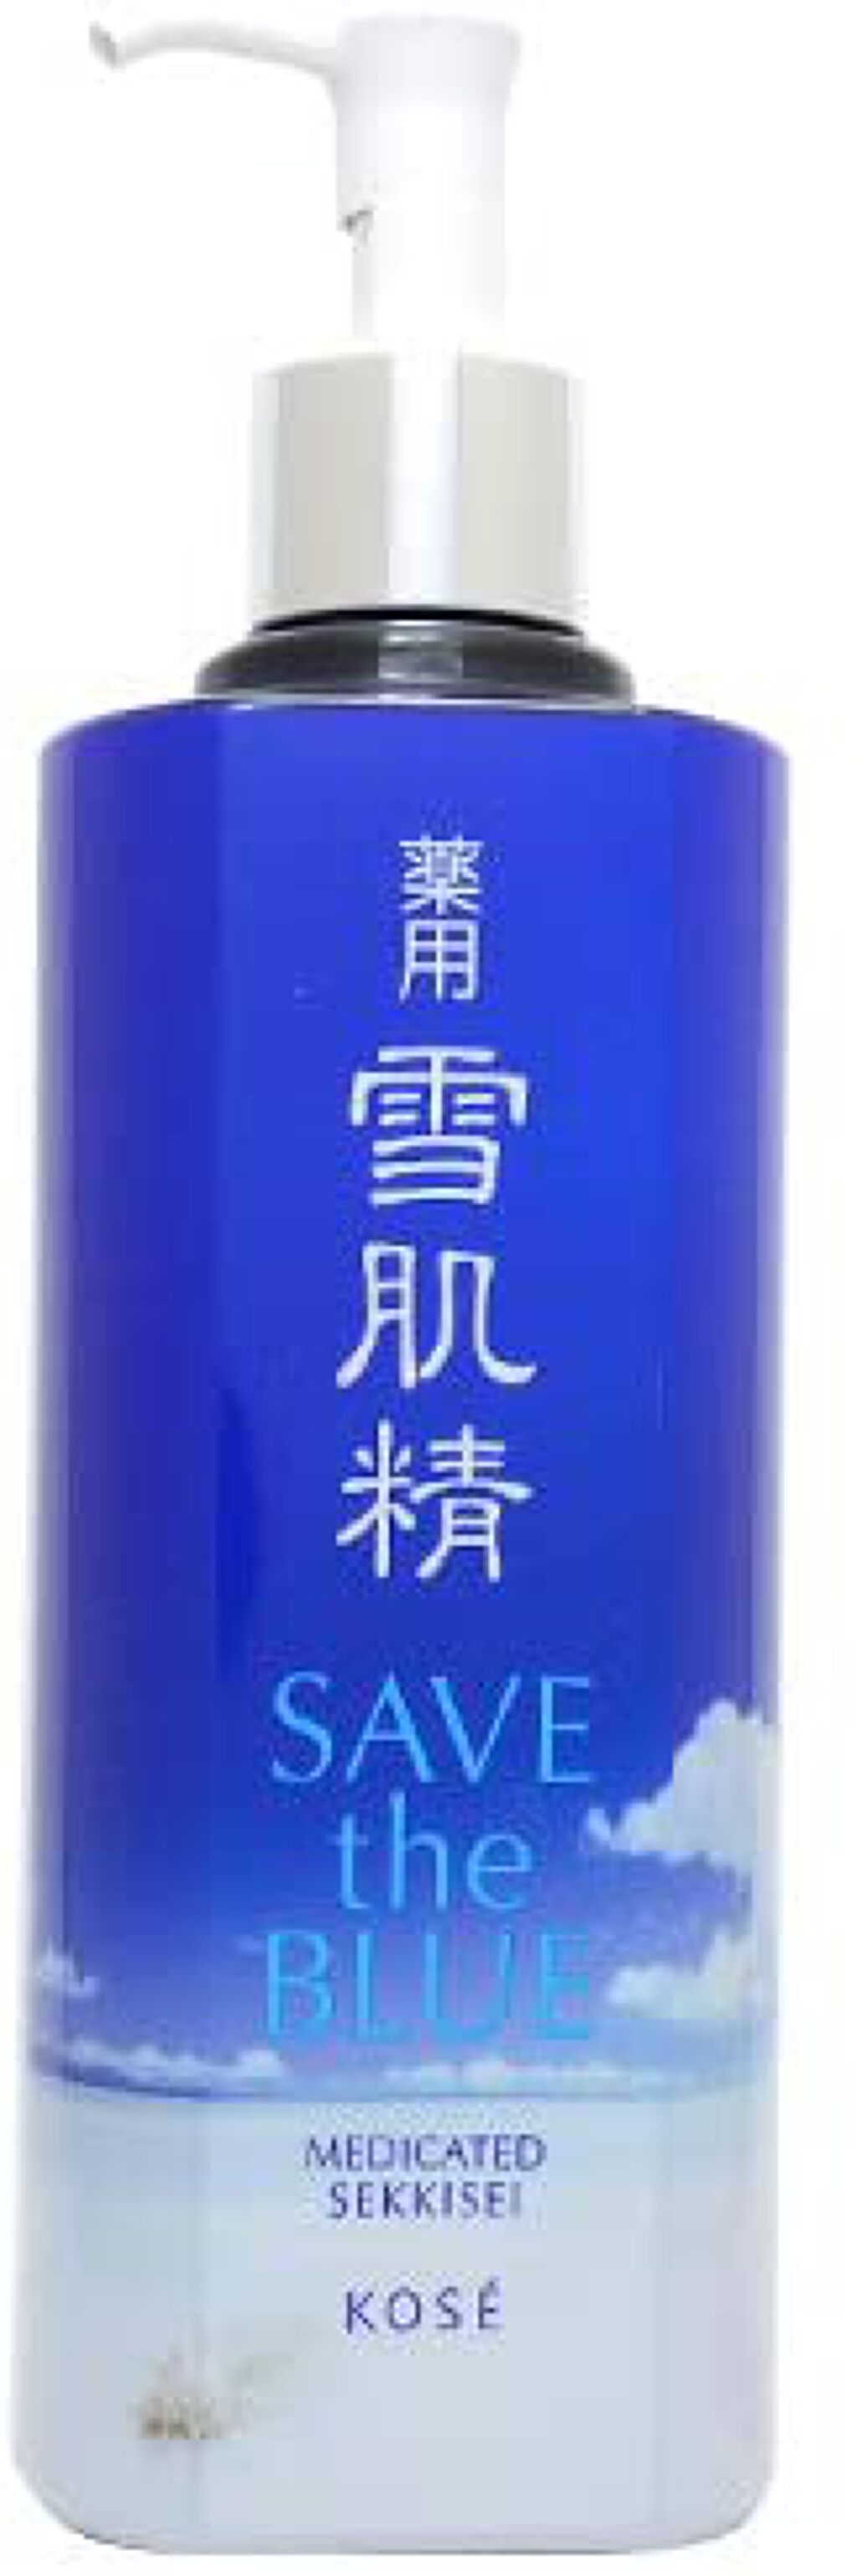 薬用 雪肌精 SAVE the BLUE 限定デザイン / 雪肌精(セッキセイ) | LIPS